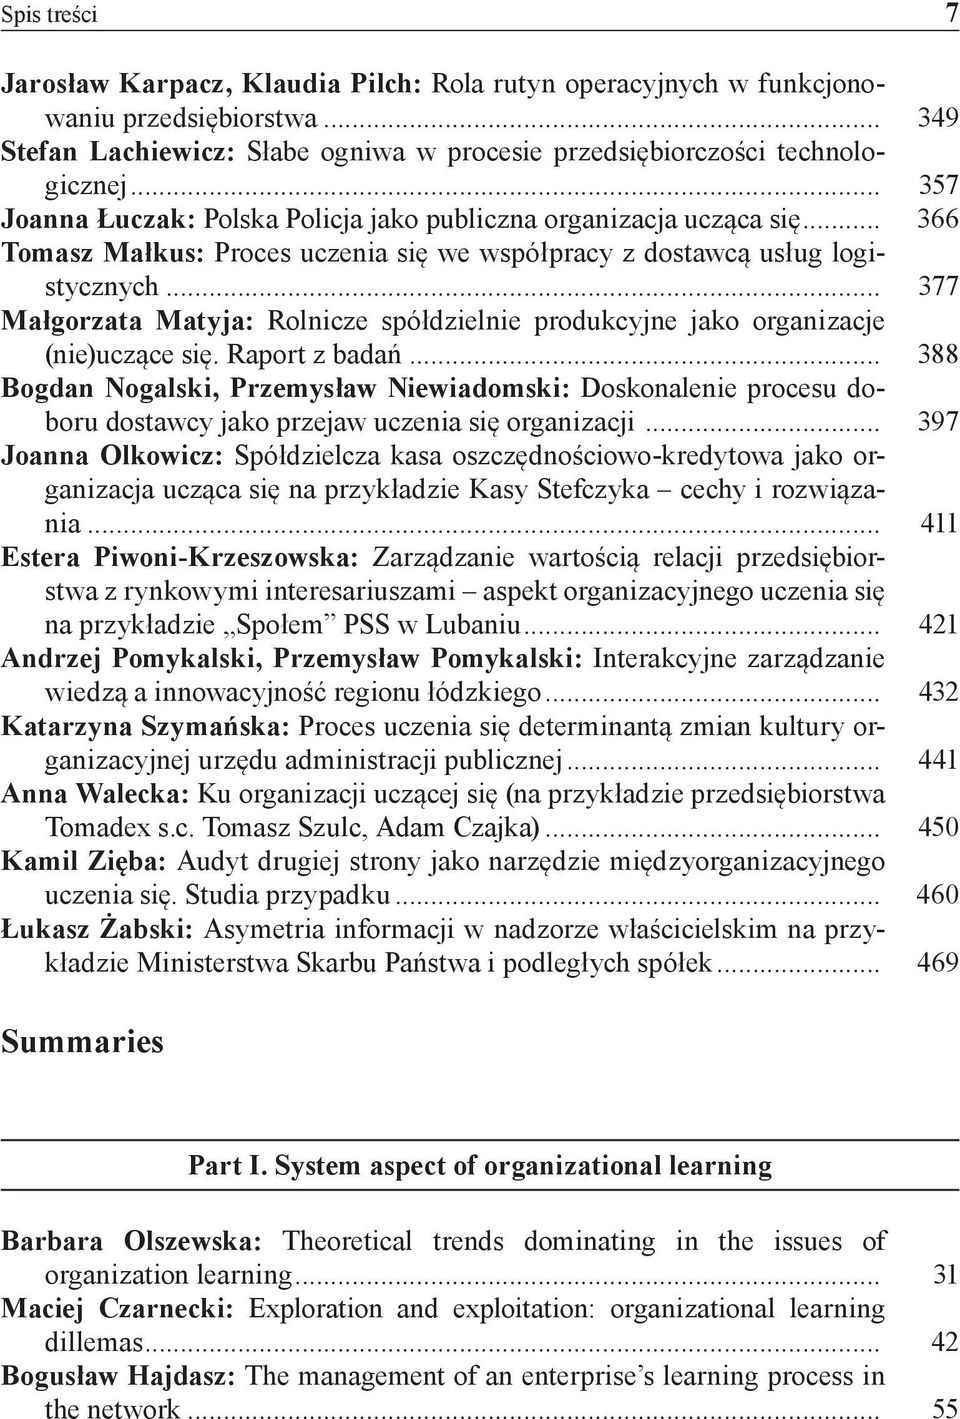 .. 377 Małgorzata Matyja: Rolnicze spółdzielnie produkcyjne jako organizacje (nie)uczące się. Raport z badań.